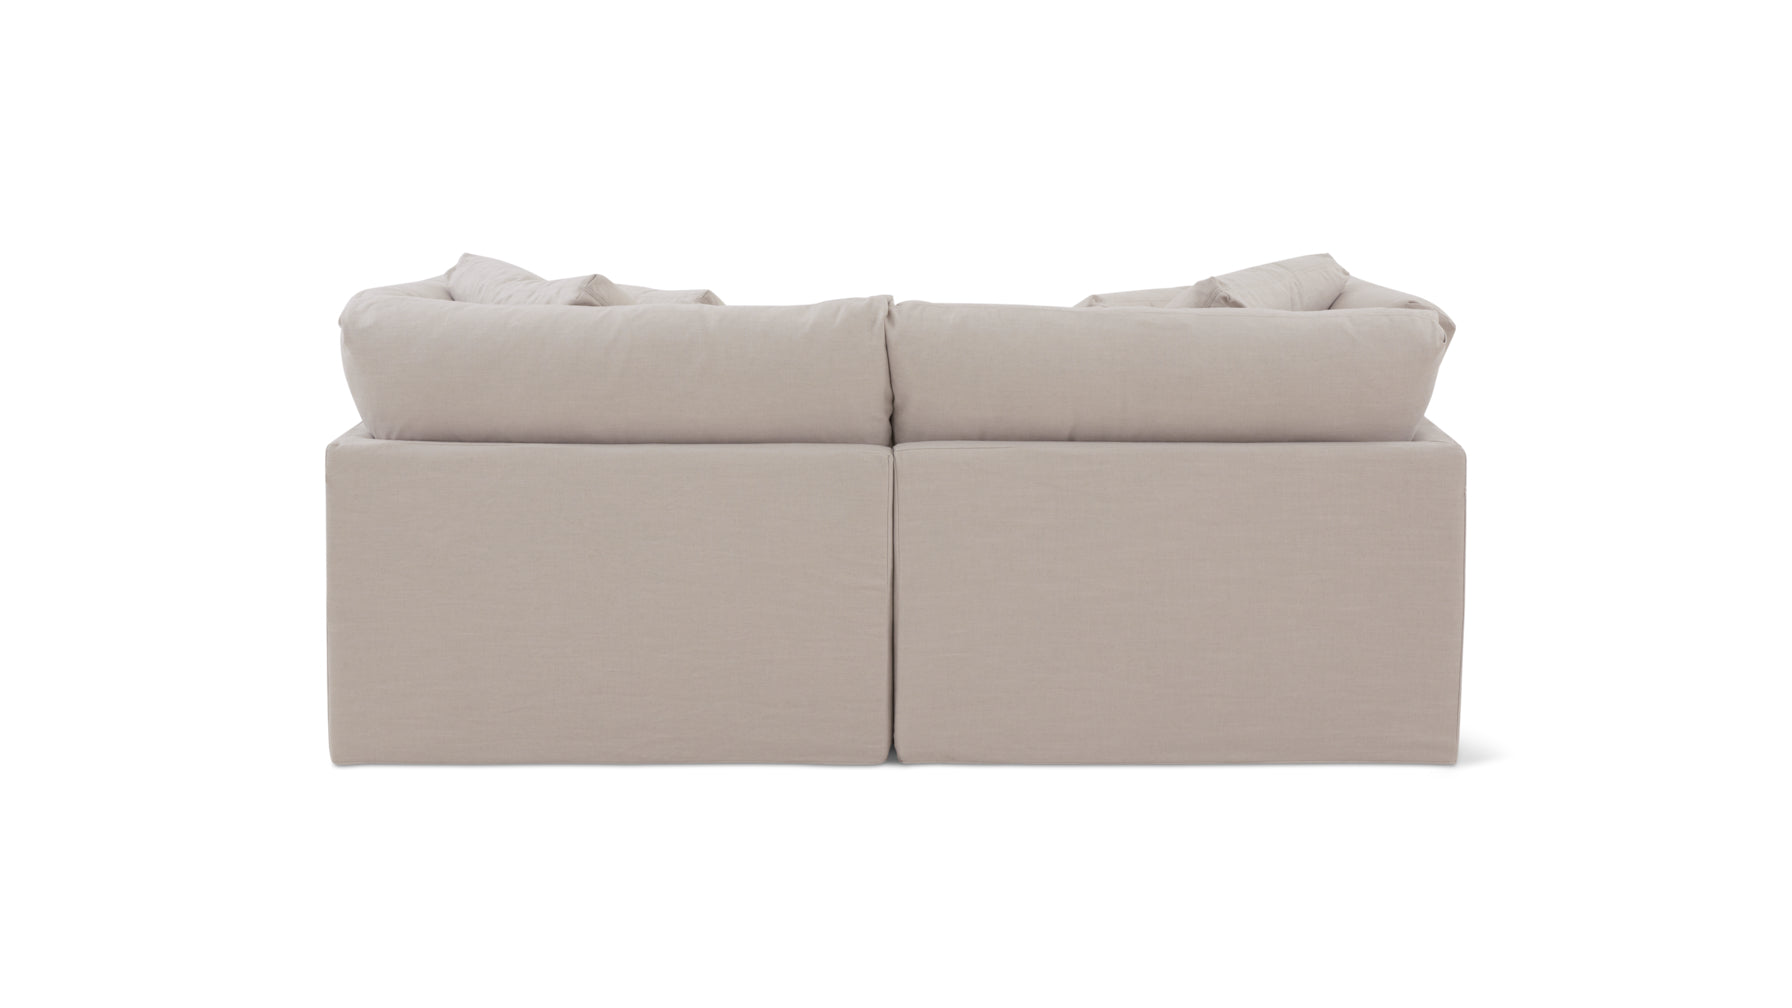 Get Together™ 2 Piece Modular Sofa, Large, Clay - Image 8